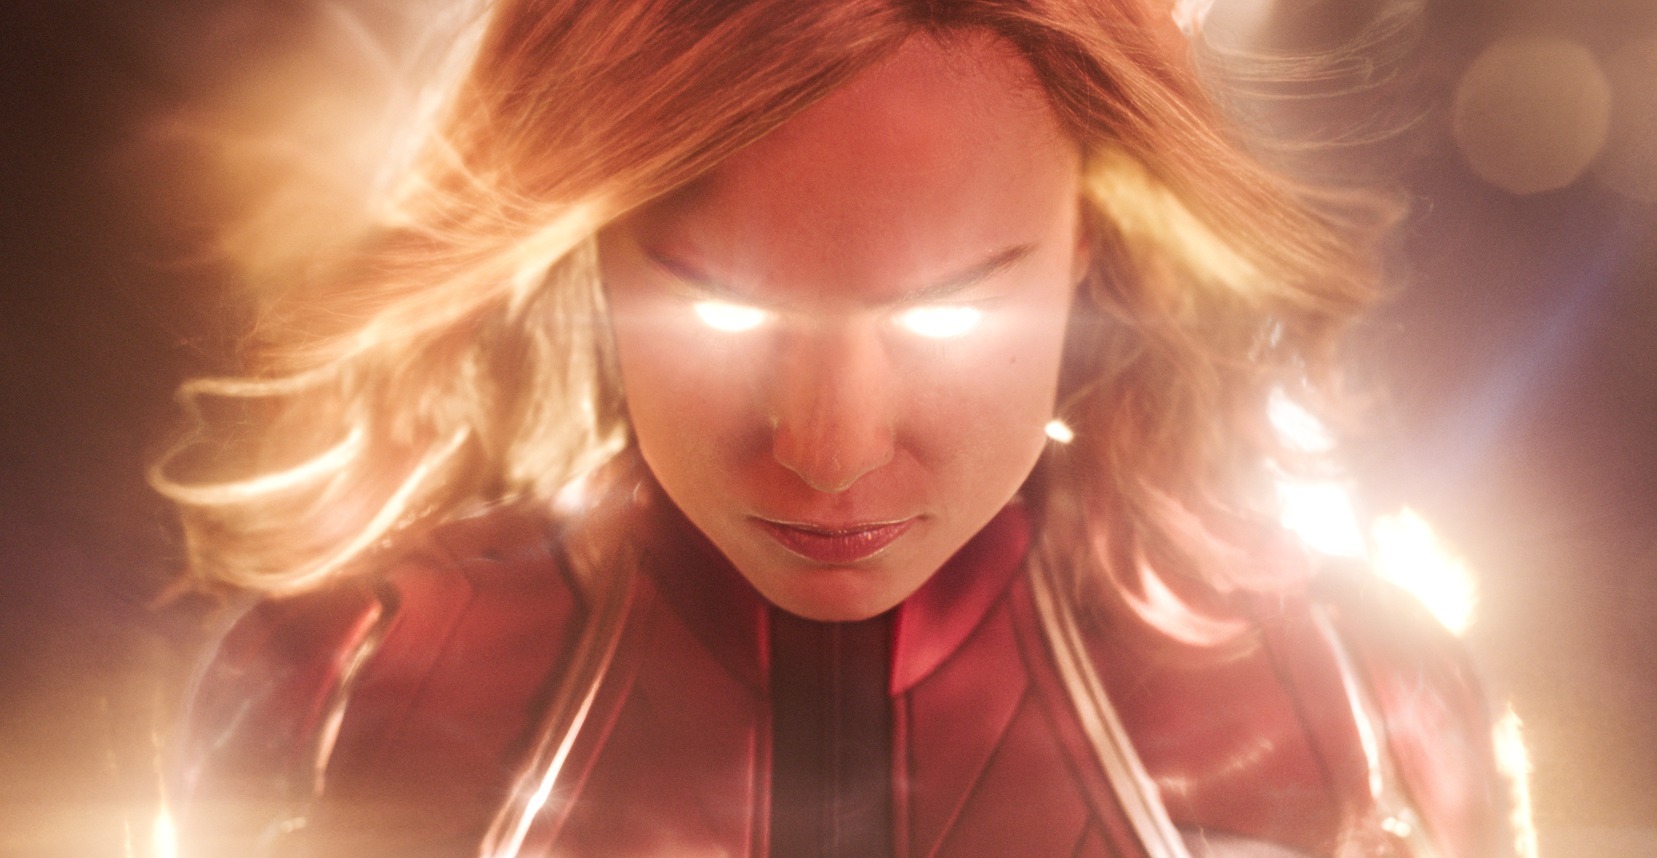 Captain Marvel impresses in first female-led Marvel movie